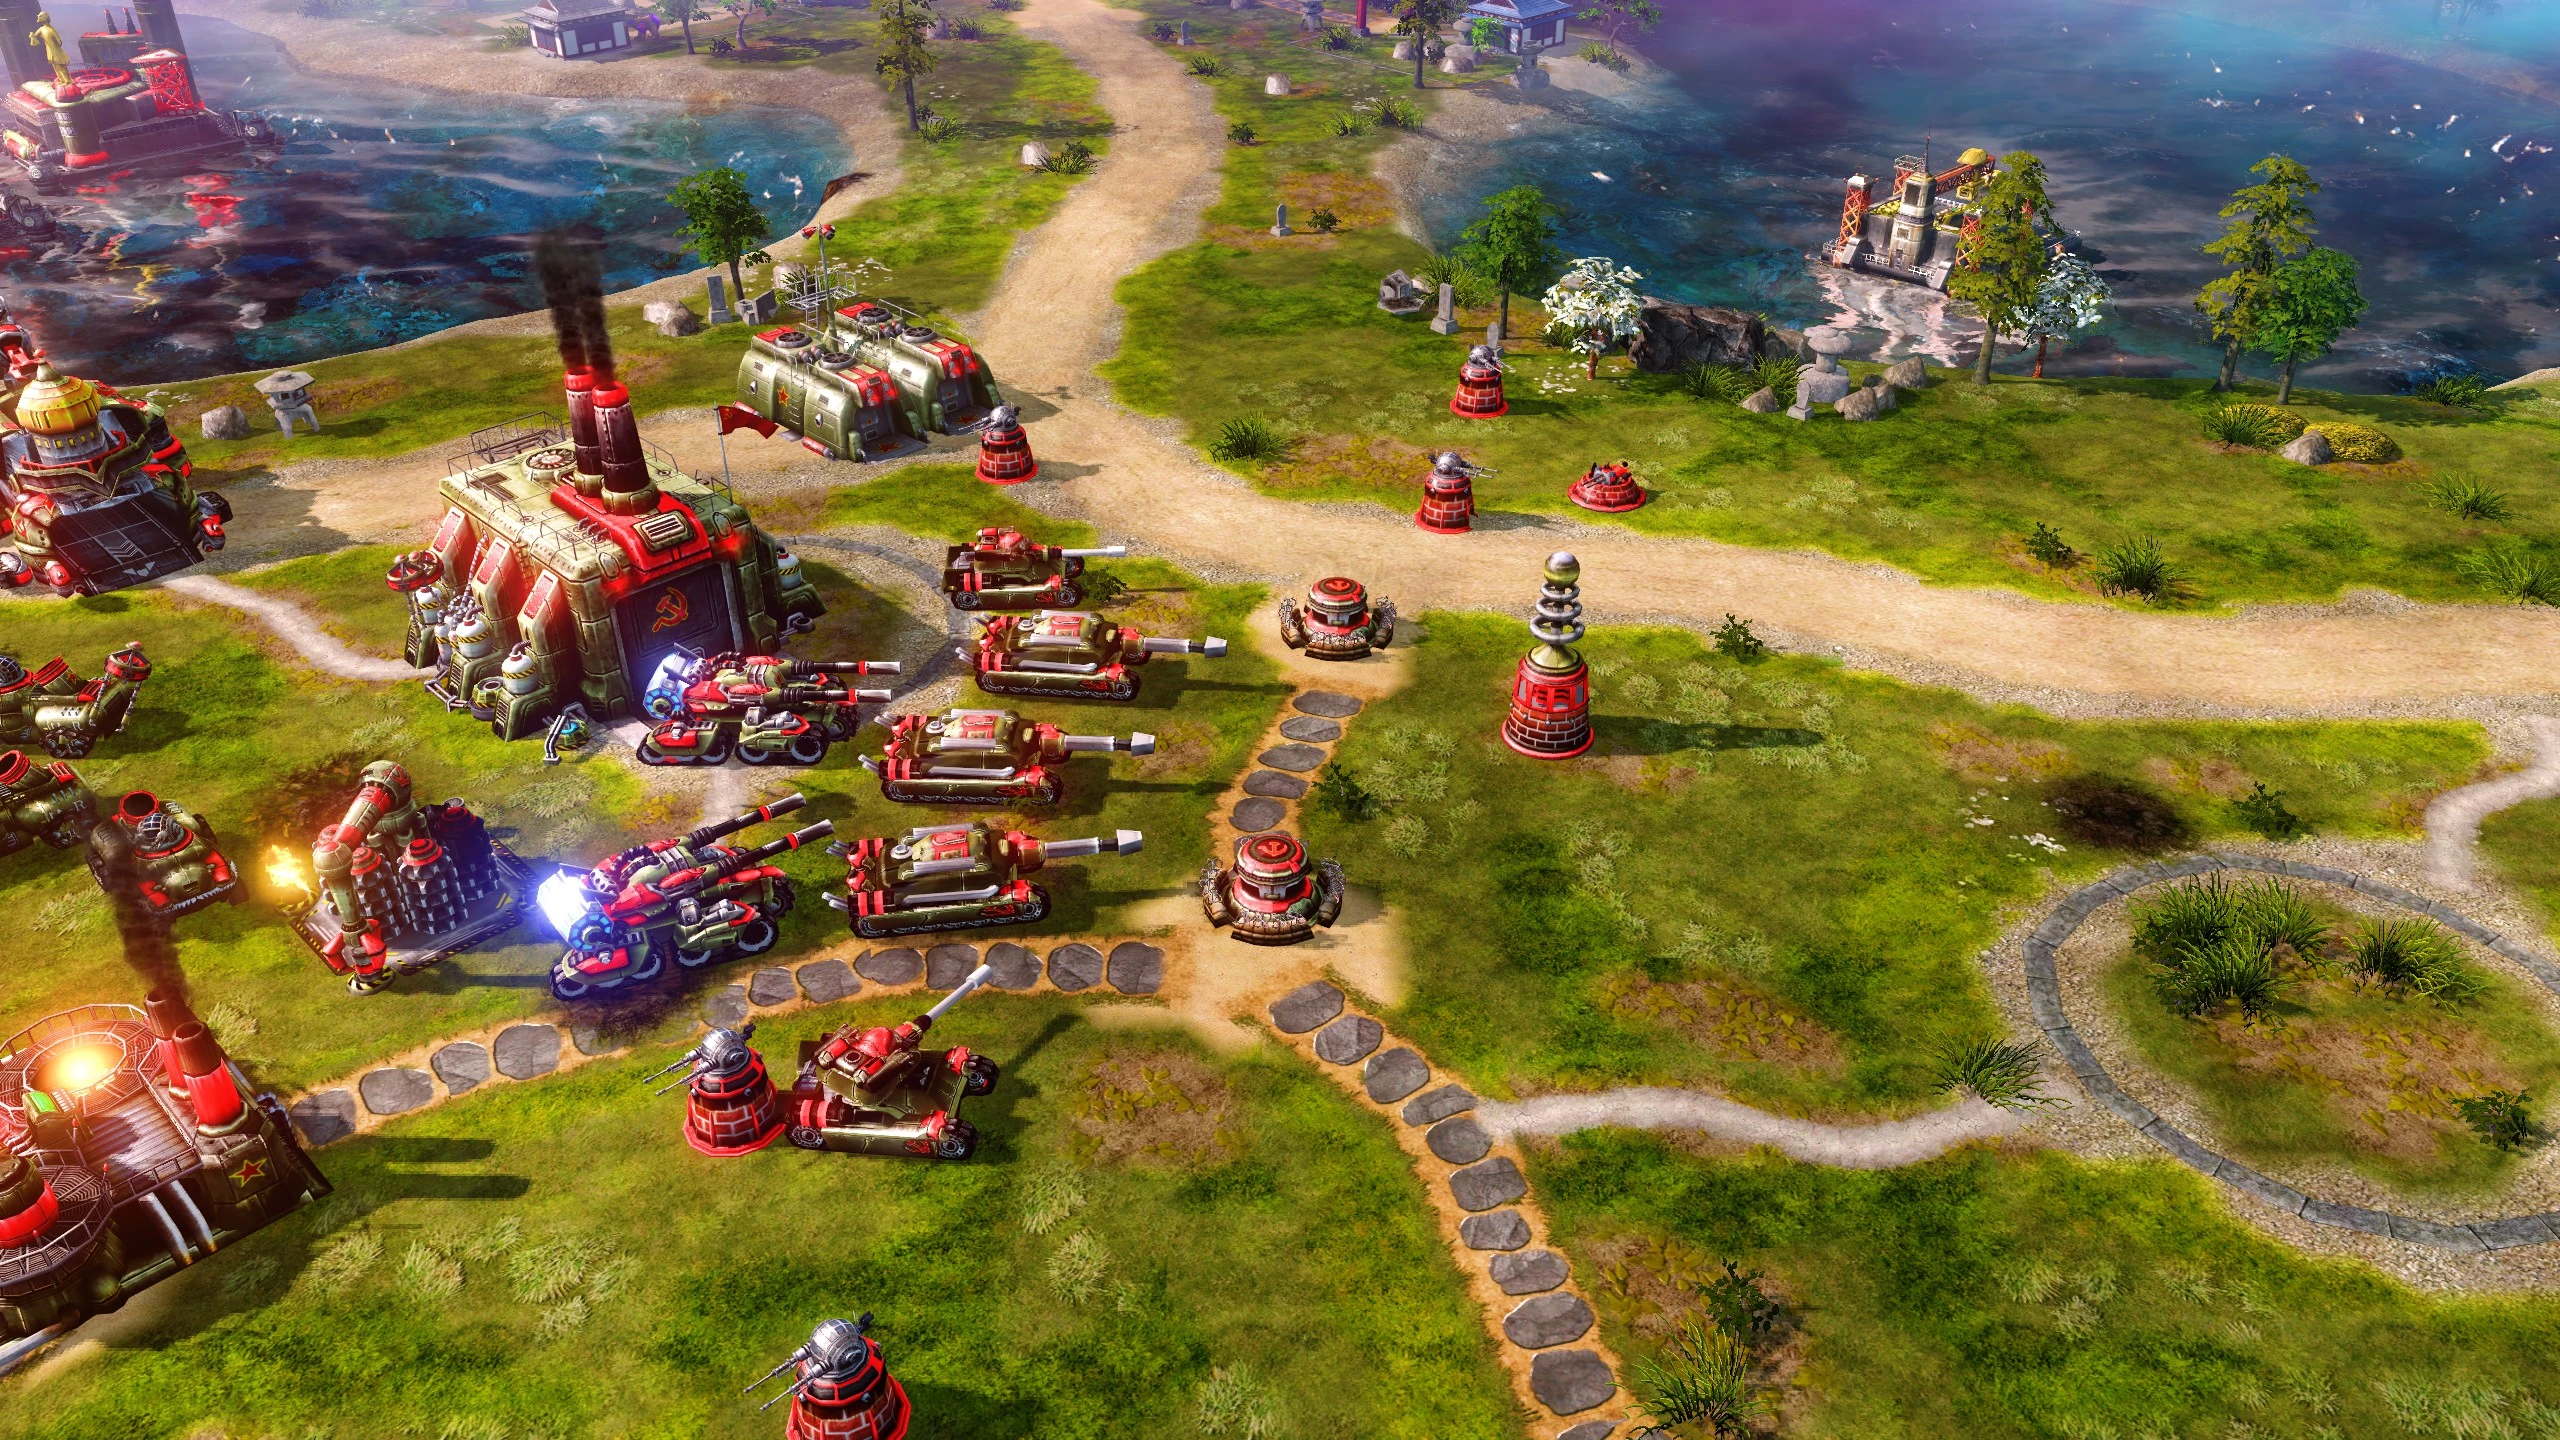 Præsident farvestof Hvile Uprising Reborn at Command & Conquer: Red Alert 3 Nexus - Mods and community